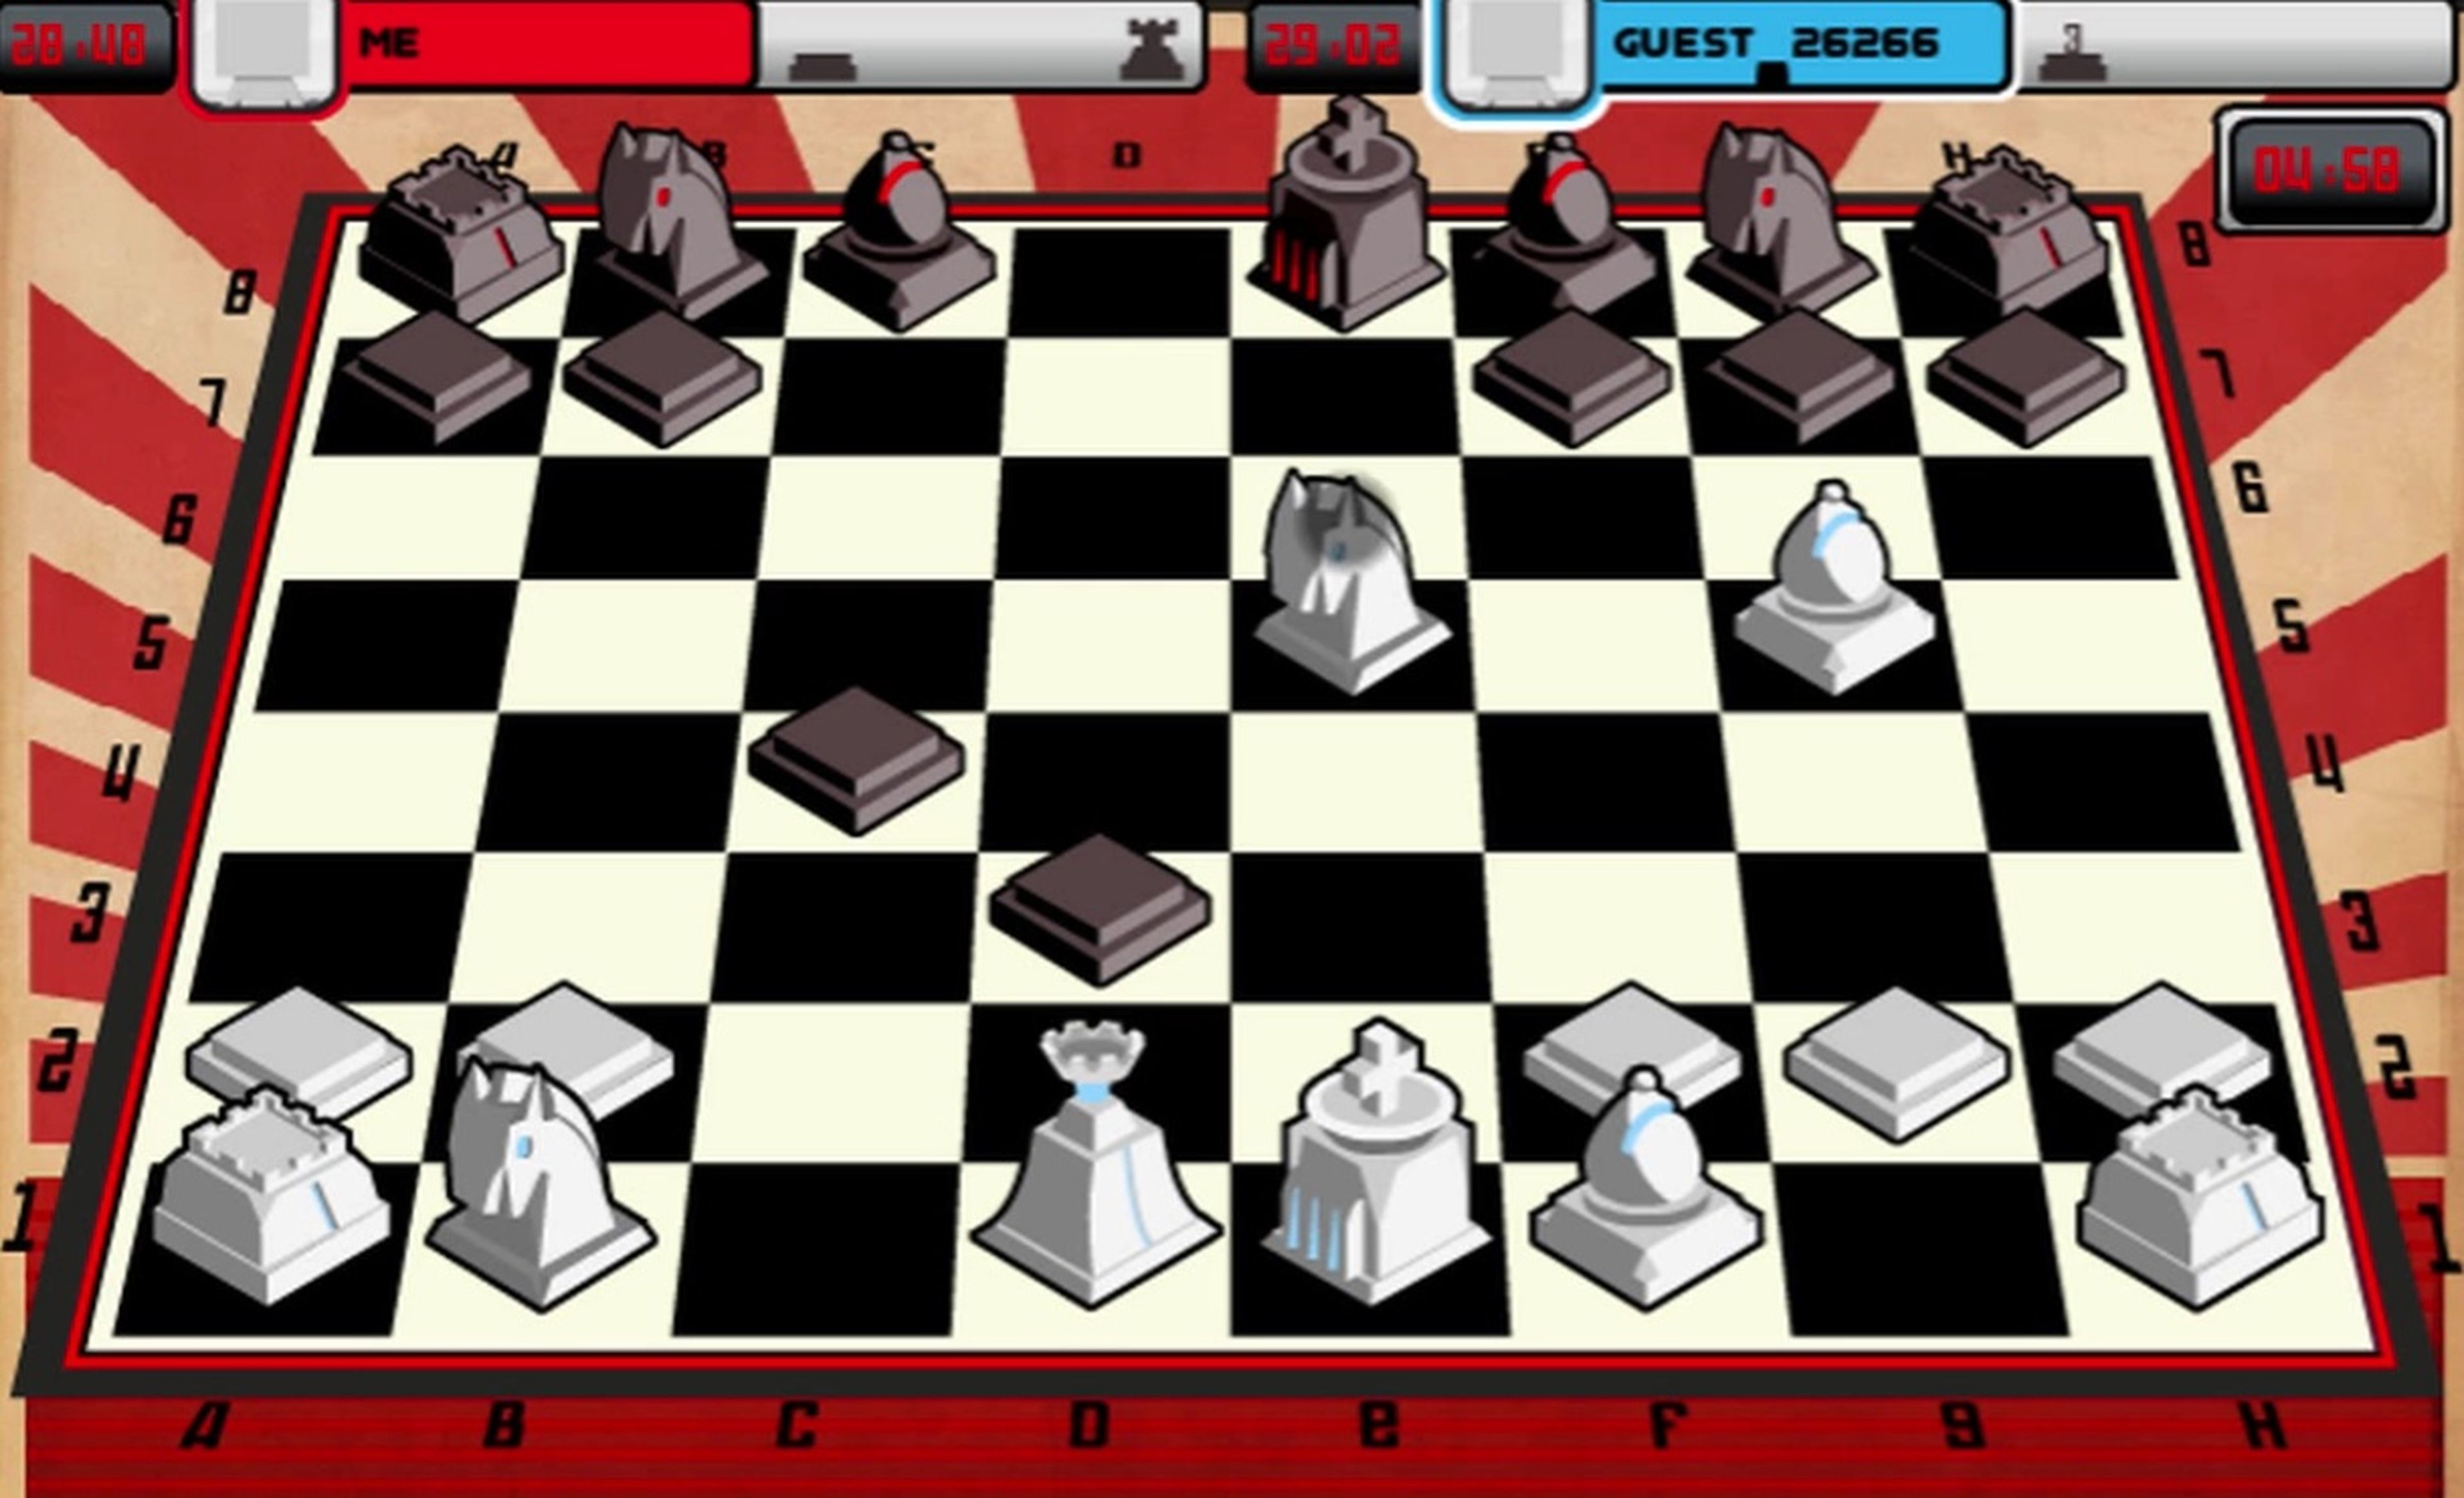 AJEDREZ. Juega al ajedrez contra ordenador gratis online en Minijuegos